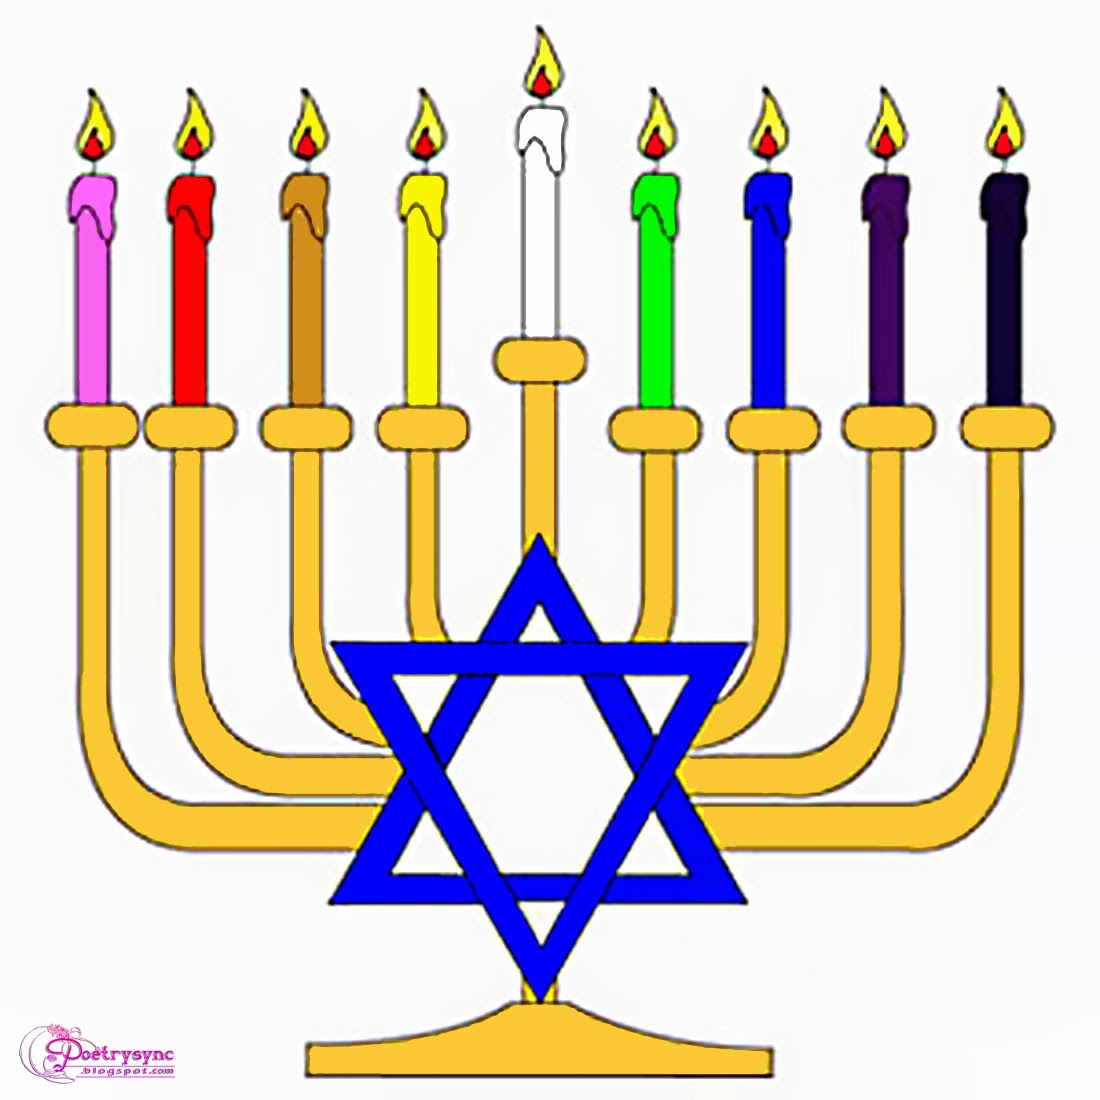 Hanukkah Candles Menorah